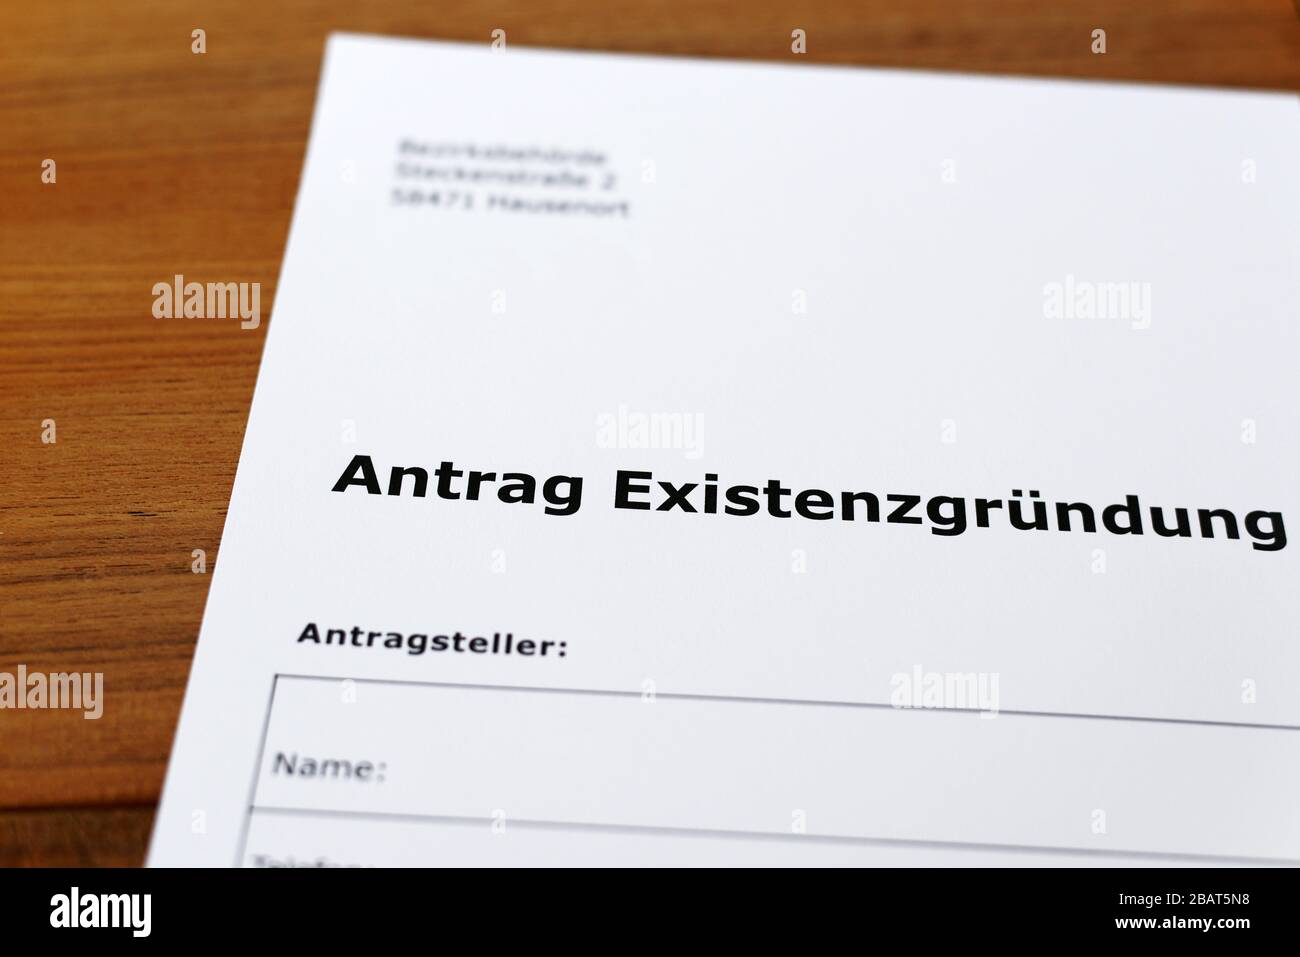 Una hoja de papel con las palabras alemanas "Antrag Existentgründung" - Traducción en englisch: Solicitud de subvención inicial. Foto de stock